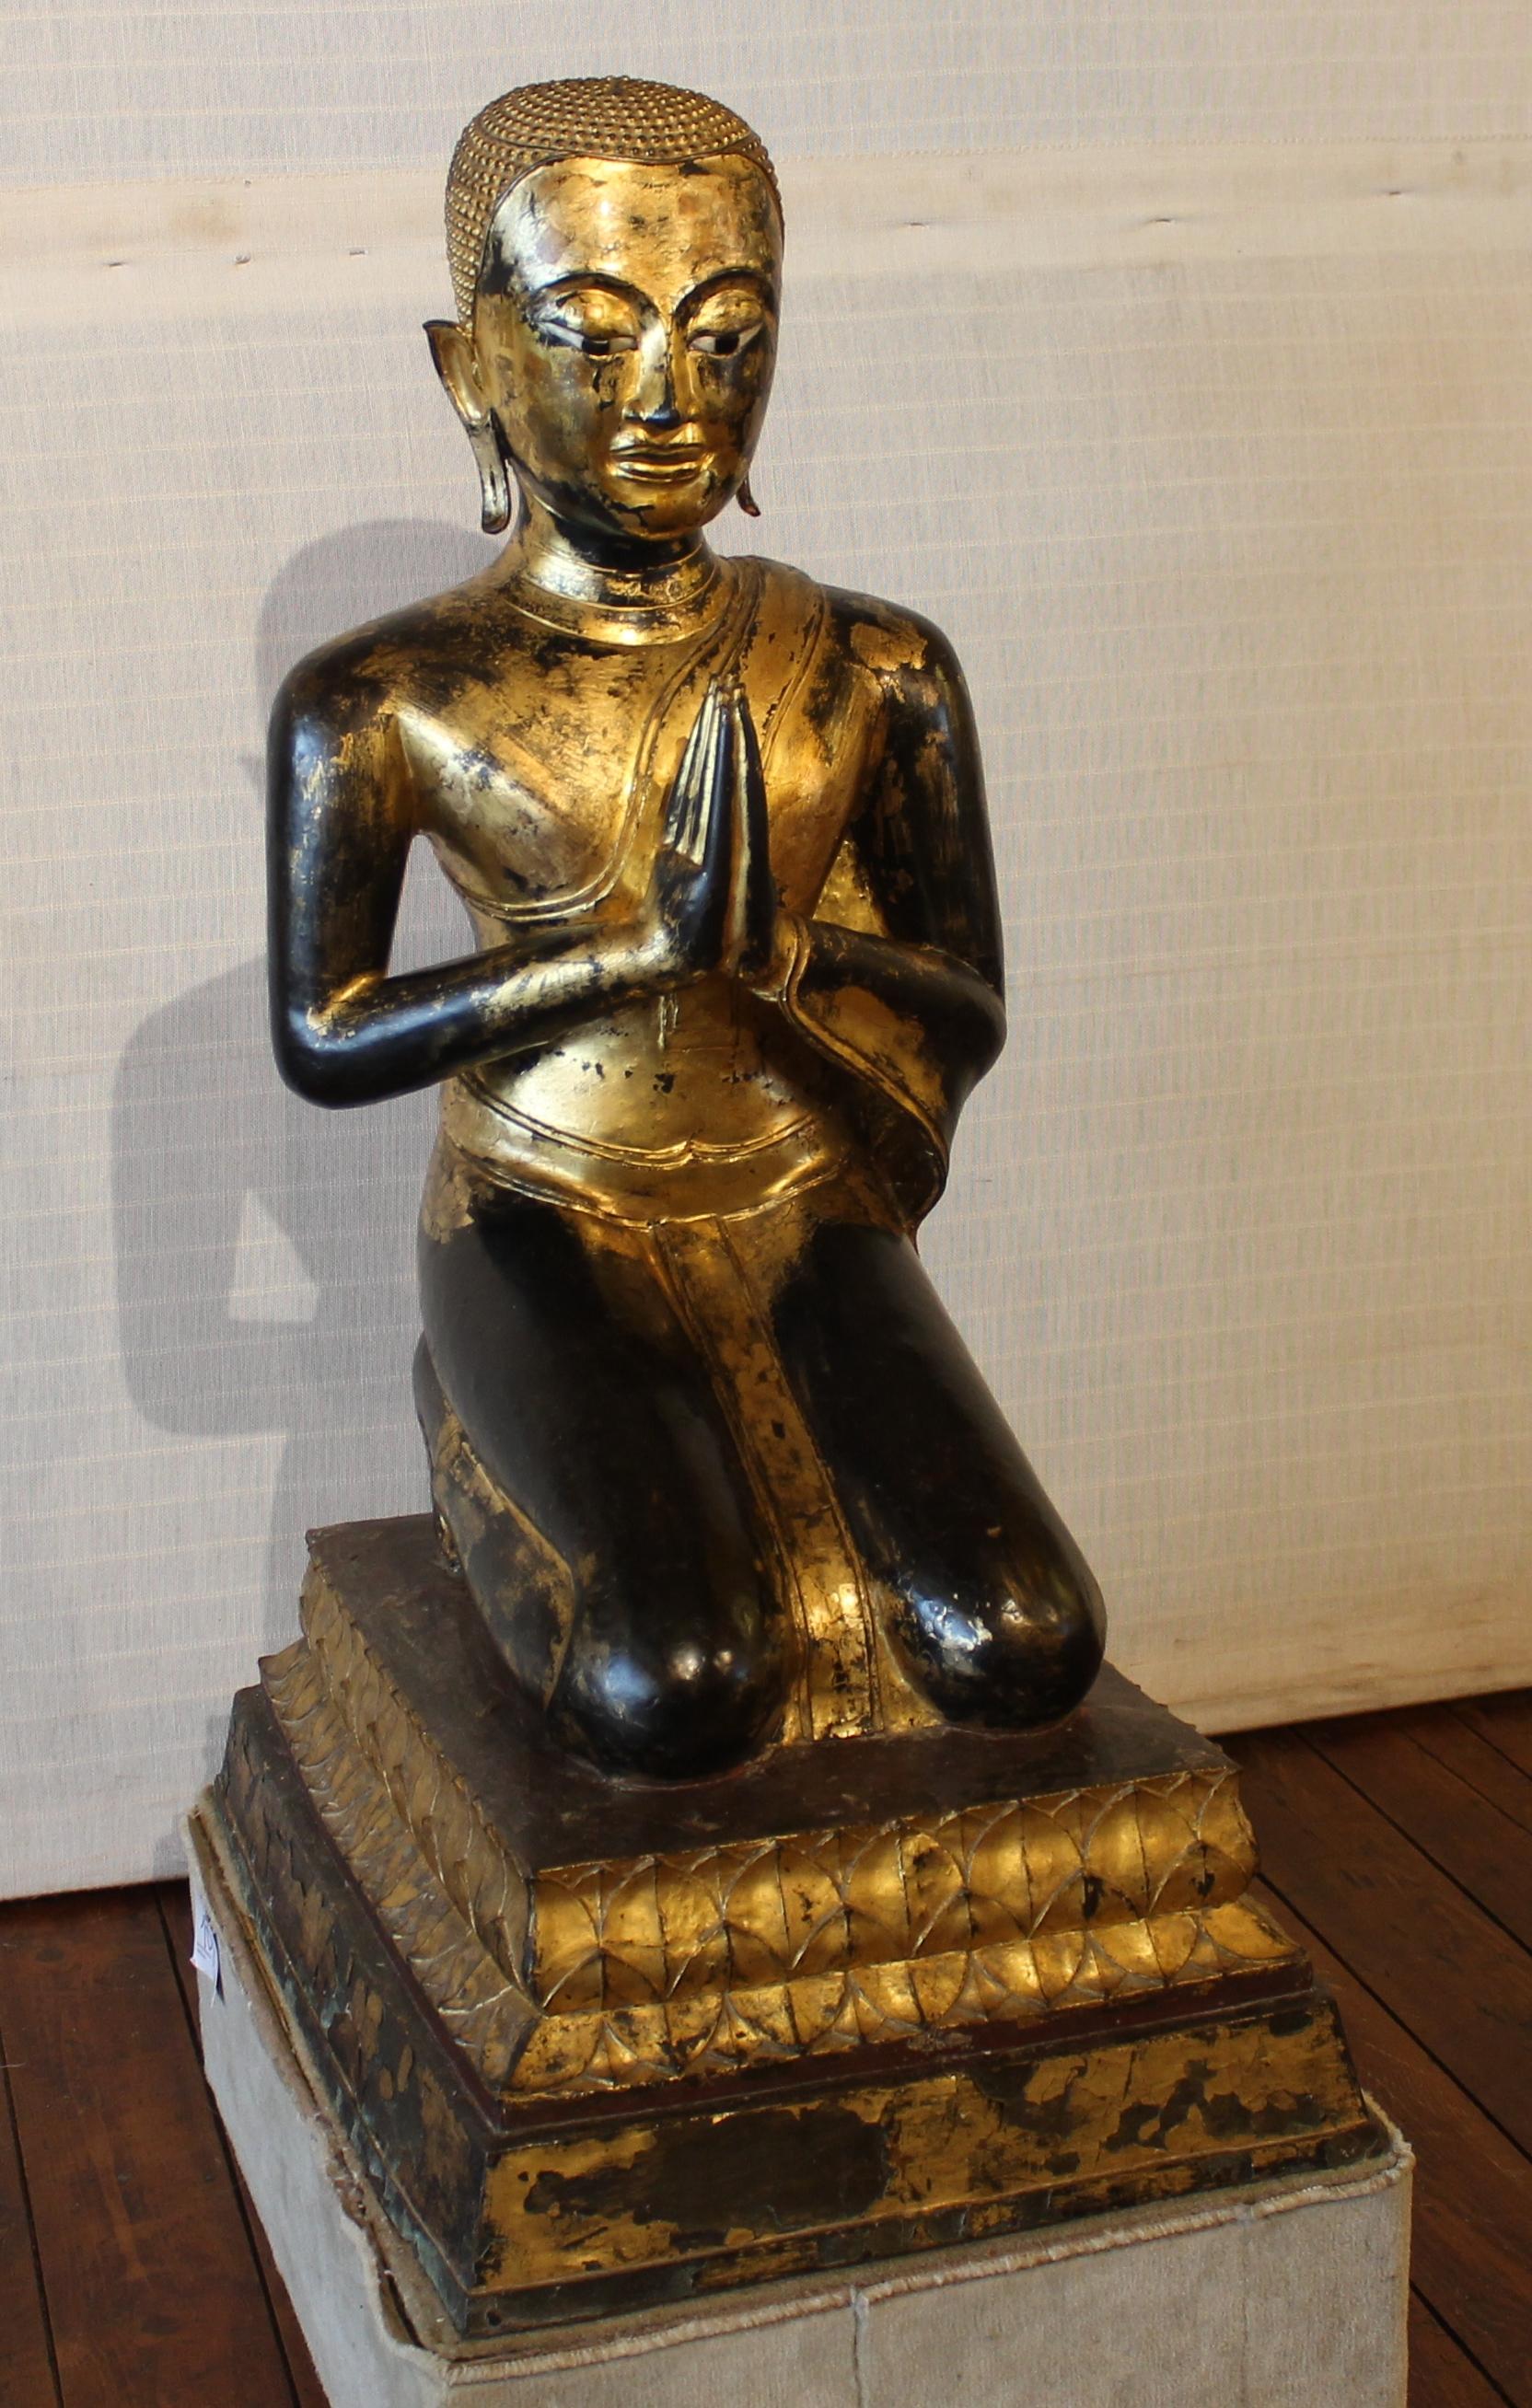 Seltener Mönch des 18. Jahrhunderts-Ayutthaya-Thailand
Hervorragende große lackierte und vergoldete Bronze-Mönche von großer Größe
Das schöne Gesicht des Gesichts
In hervorragendem Zustand und ohne Restaurierung erforderlich
Prächtige